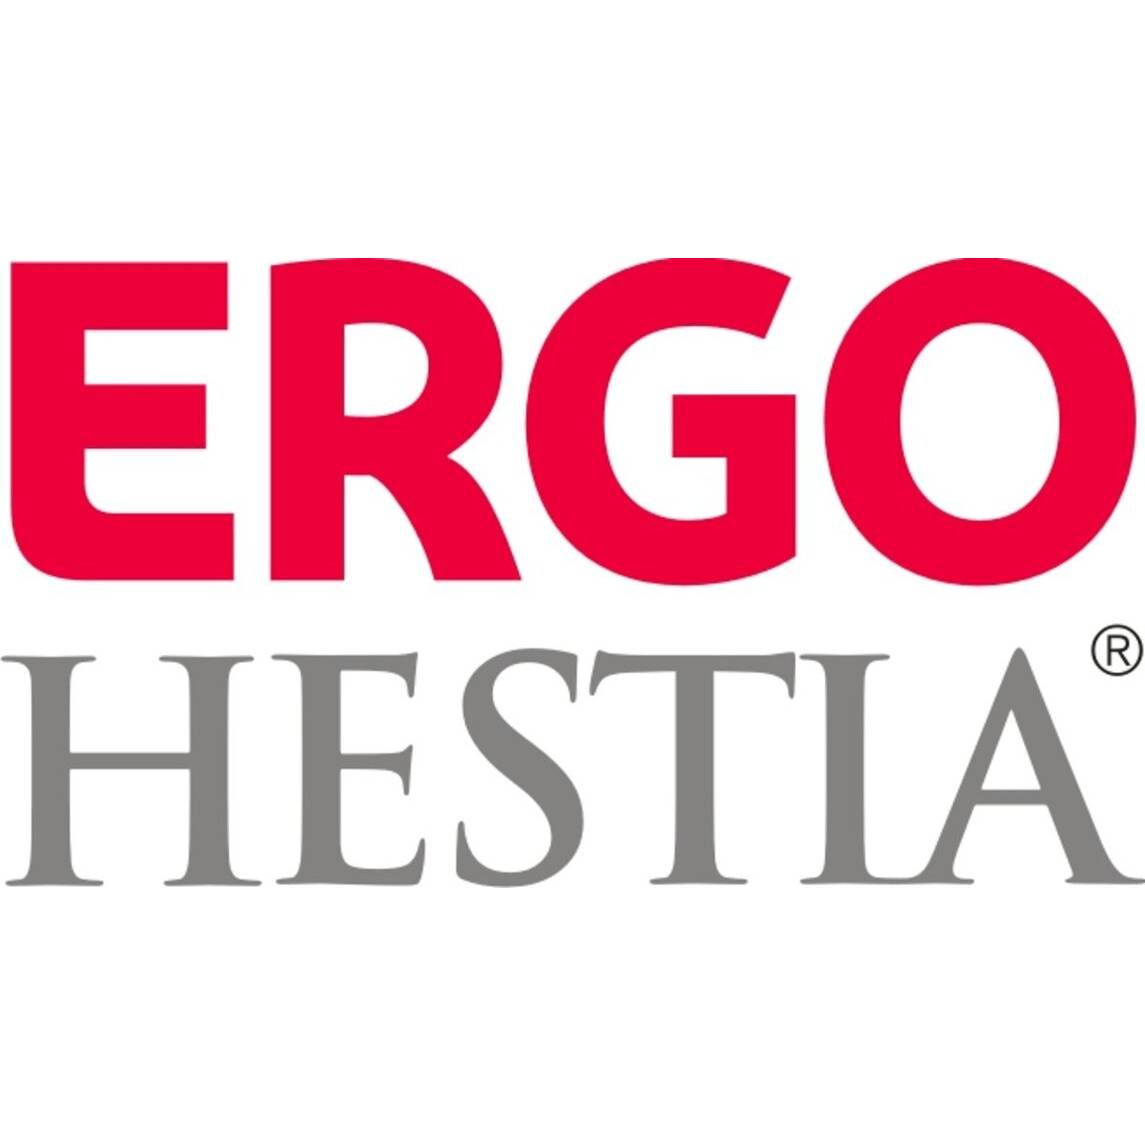 Logo Ergo Hestia